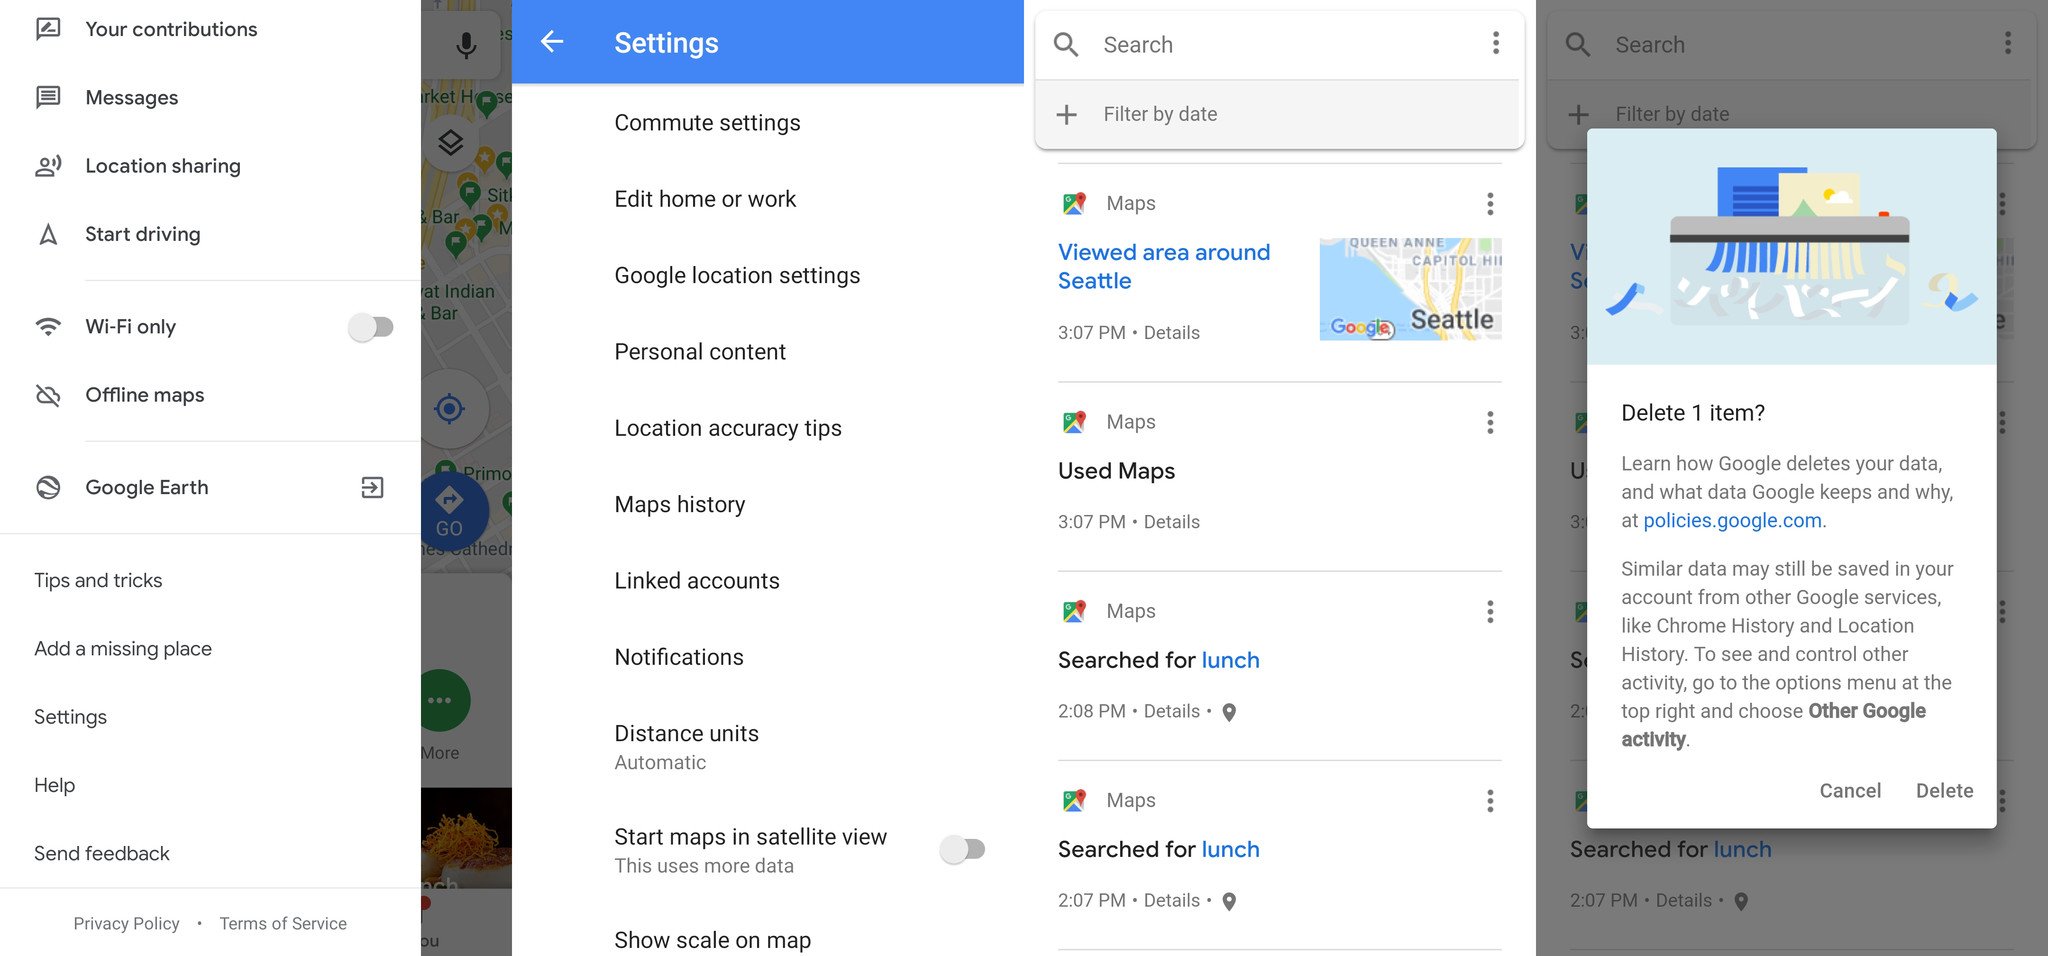 طريقة وقف تتبع خرائط جوجل للأماكن التي يتم زيارتها